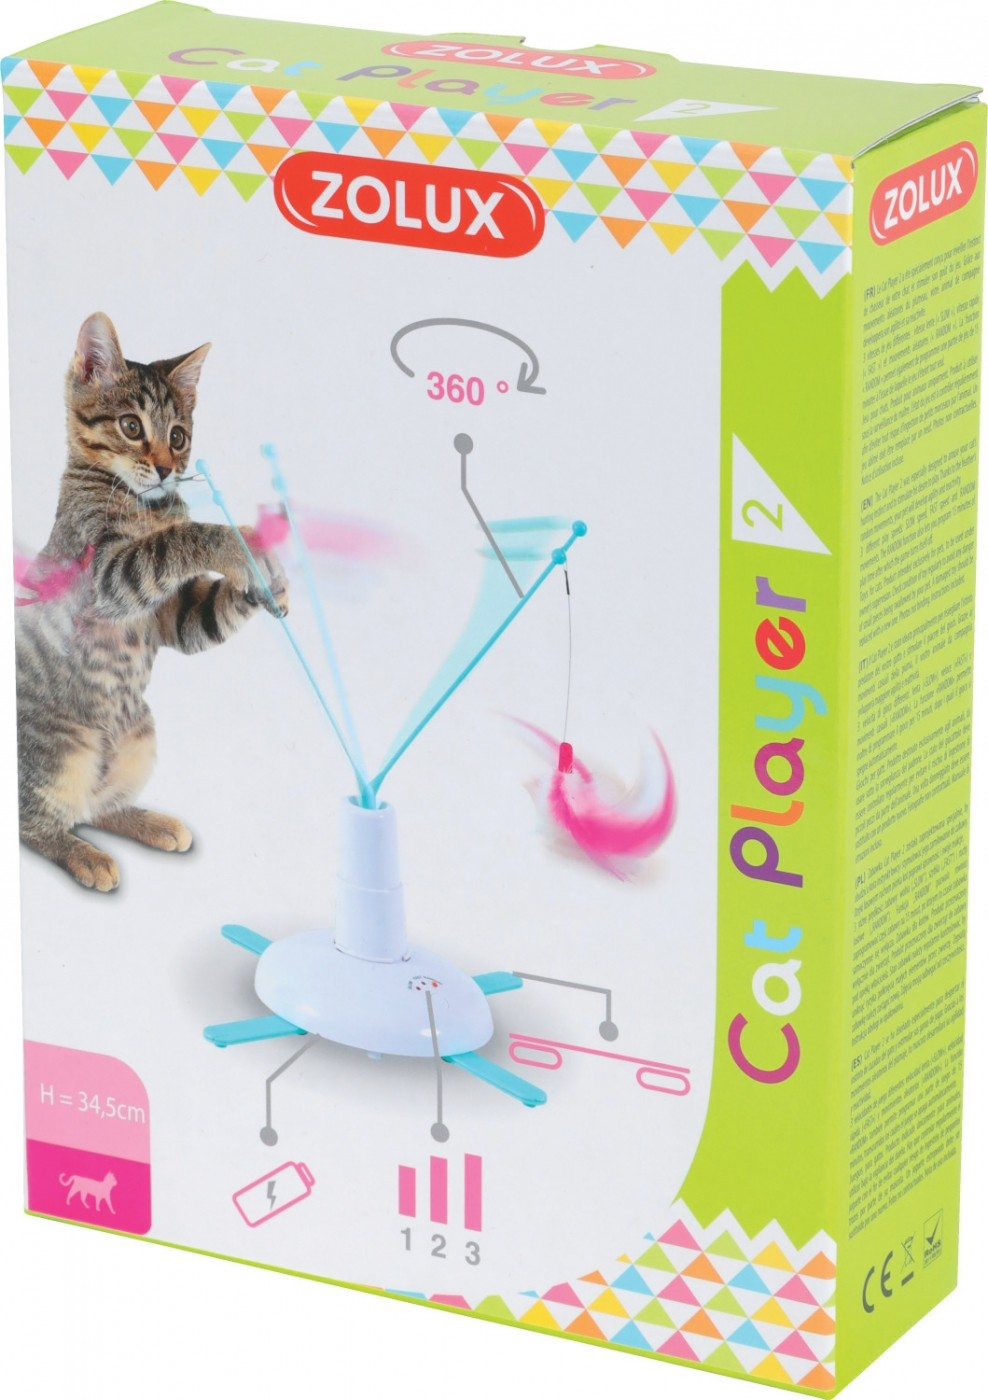 Elektronisch speelgoed voor katten - Cat Player 2